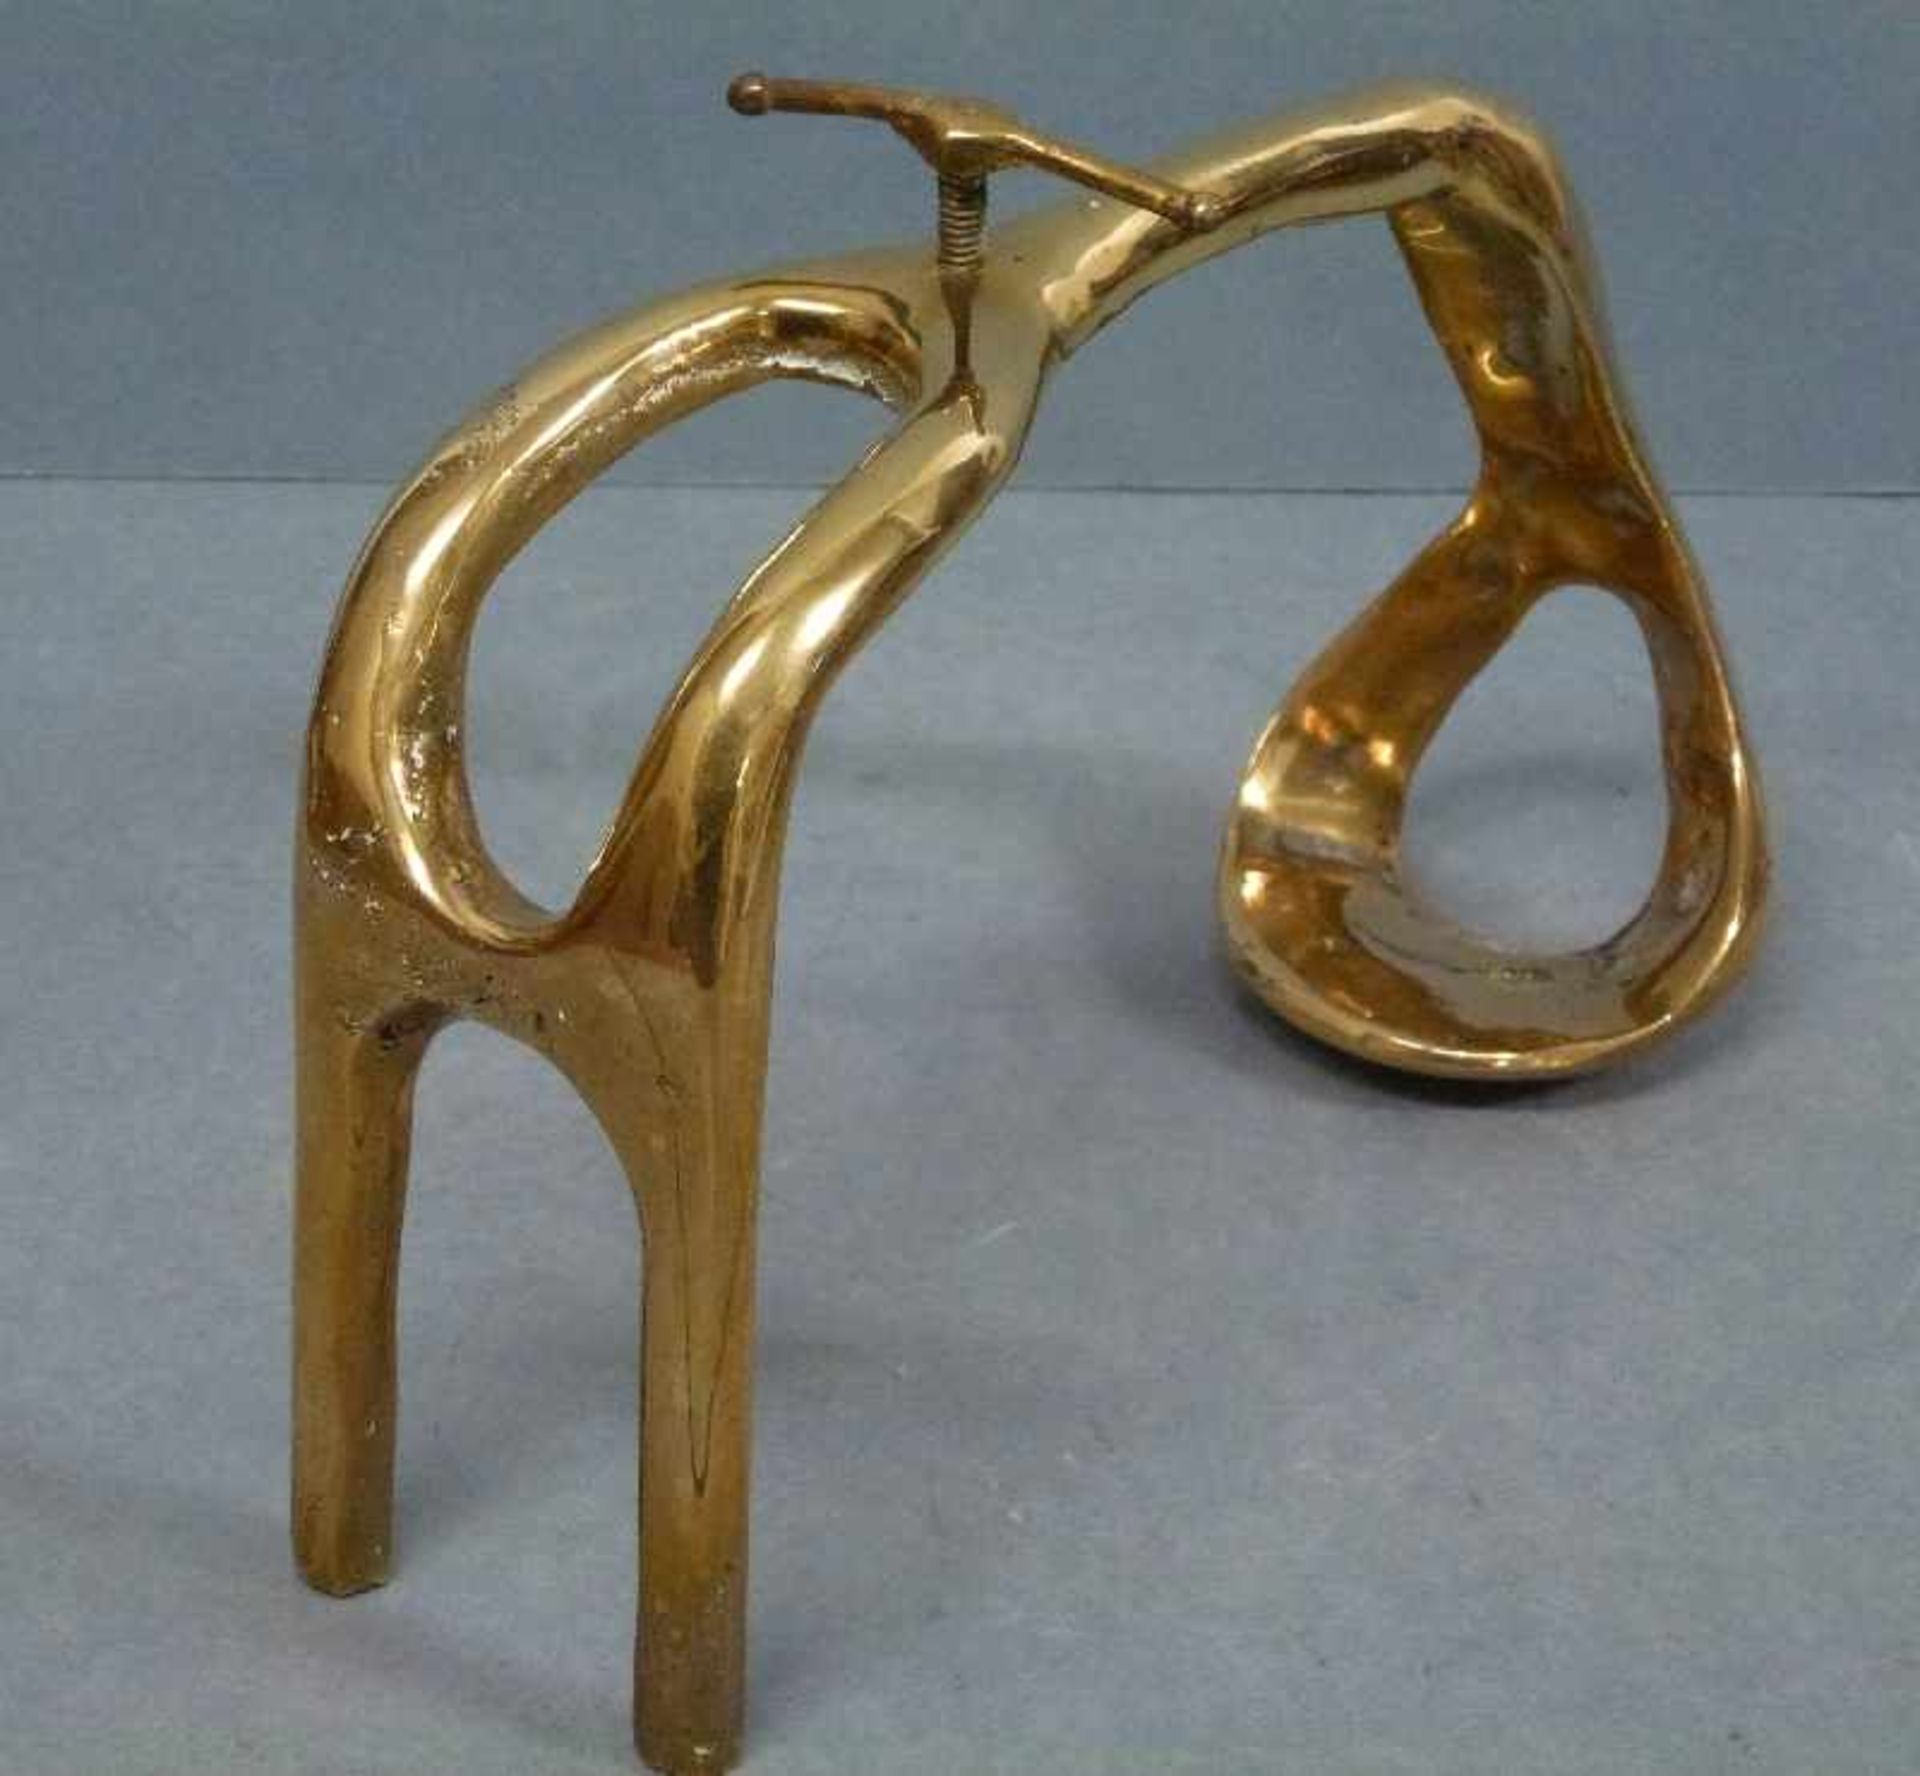 Weinflaschenhalter Bronze, gebogenes Gestell mit Feststellschraube, bez: dh?, L 26 cm